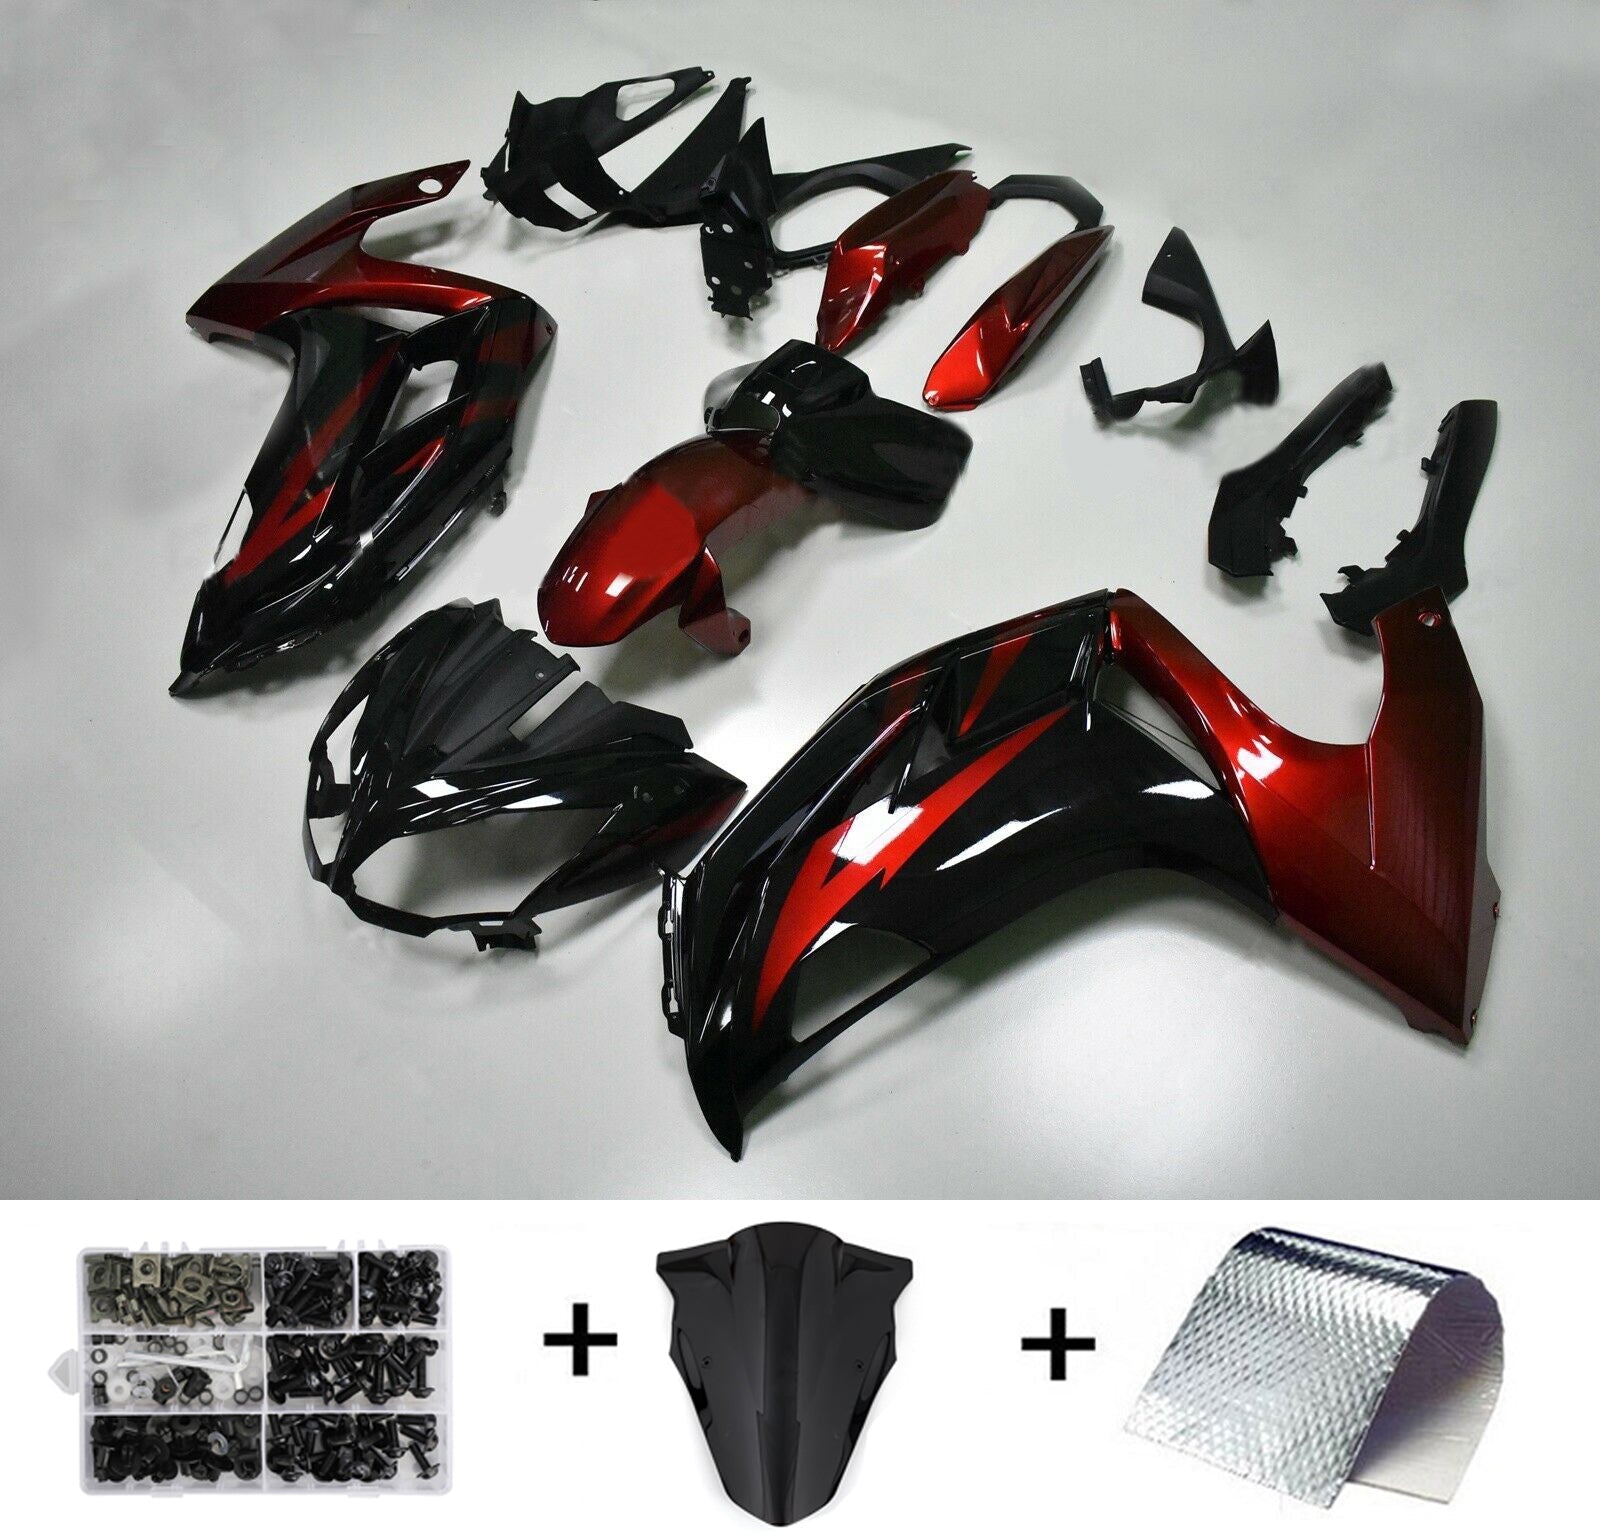 Amotopart Kit de carenado de inyección de plástico para Kawasaki Ninja 650 EX650 2012-2016 rojo negro genérico